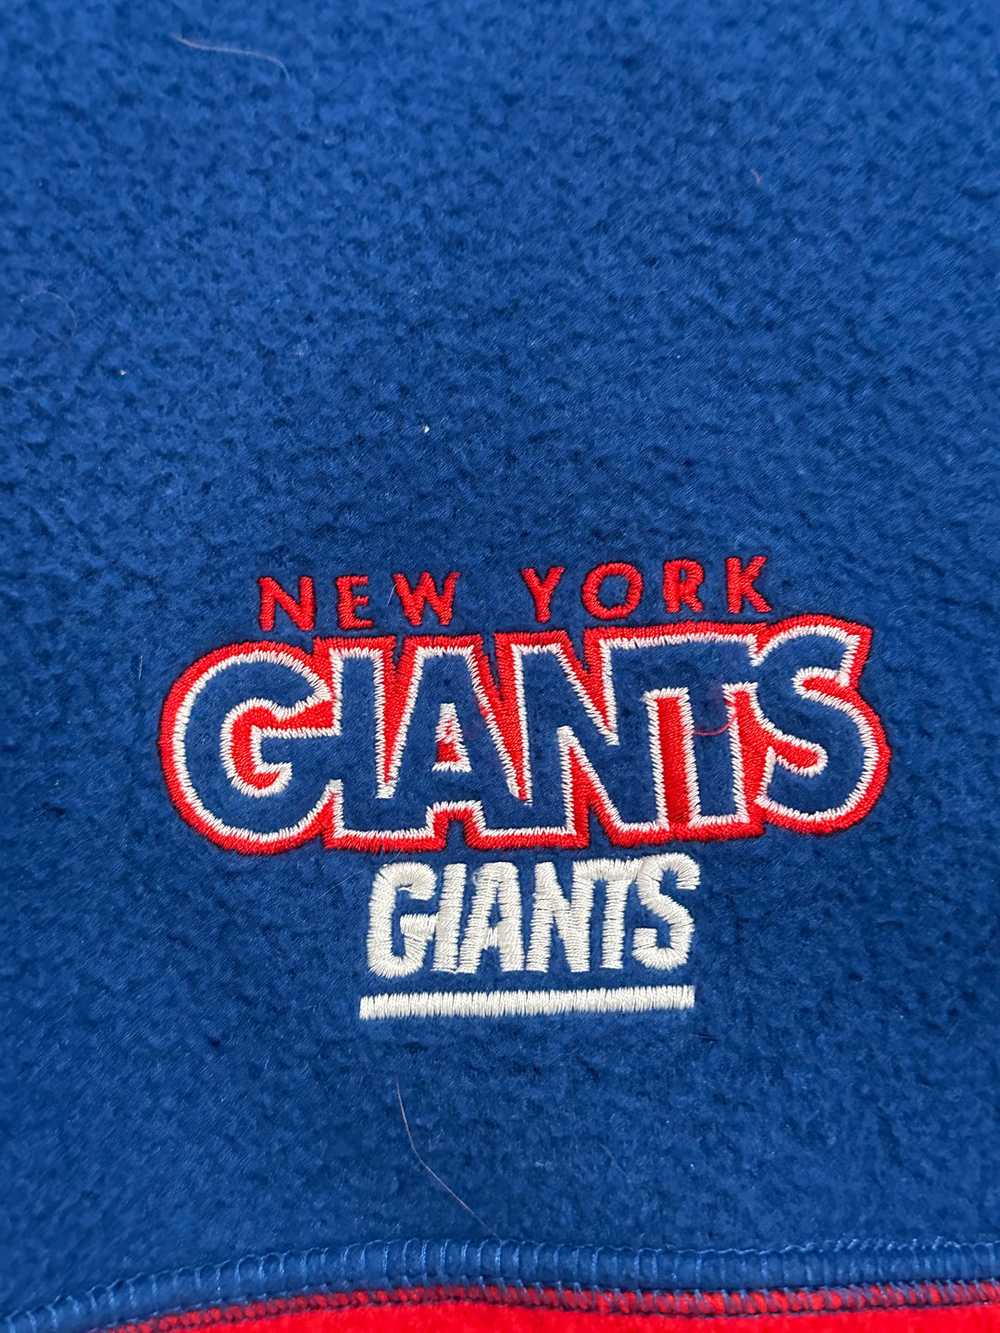 NY Giants Half Zip Fleece Size XL - image 2